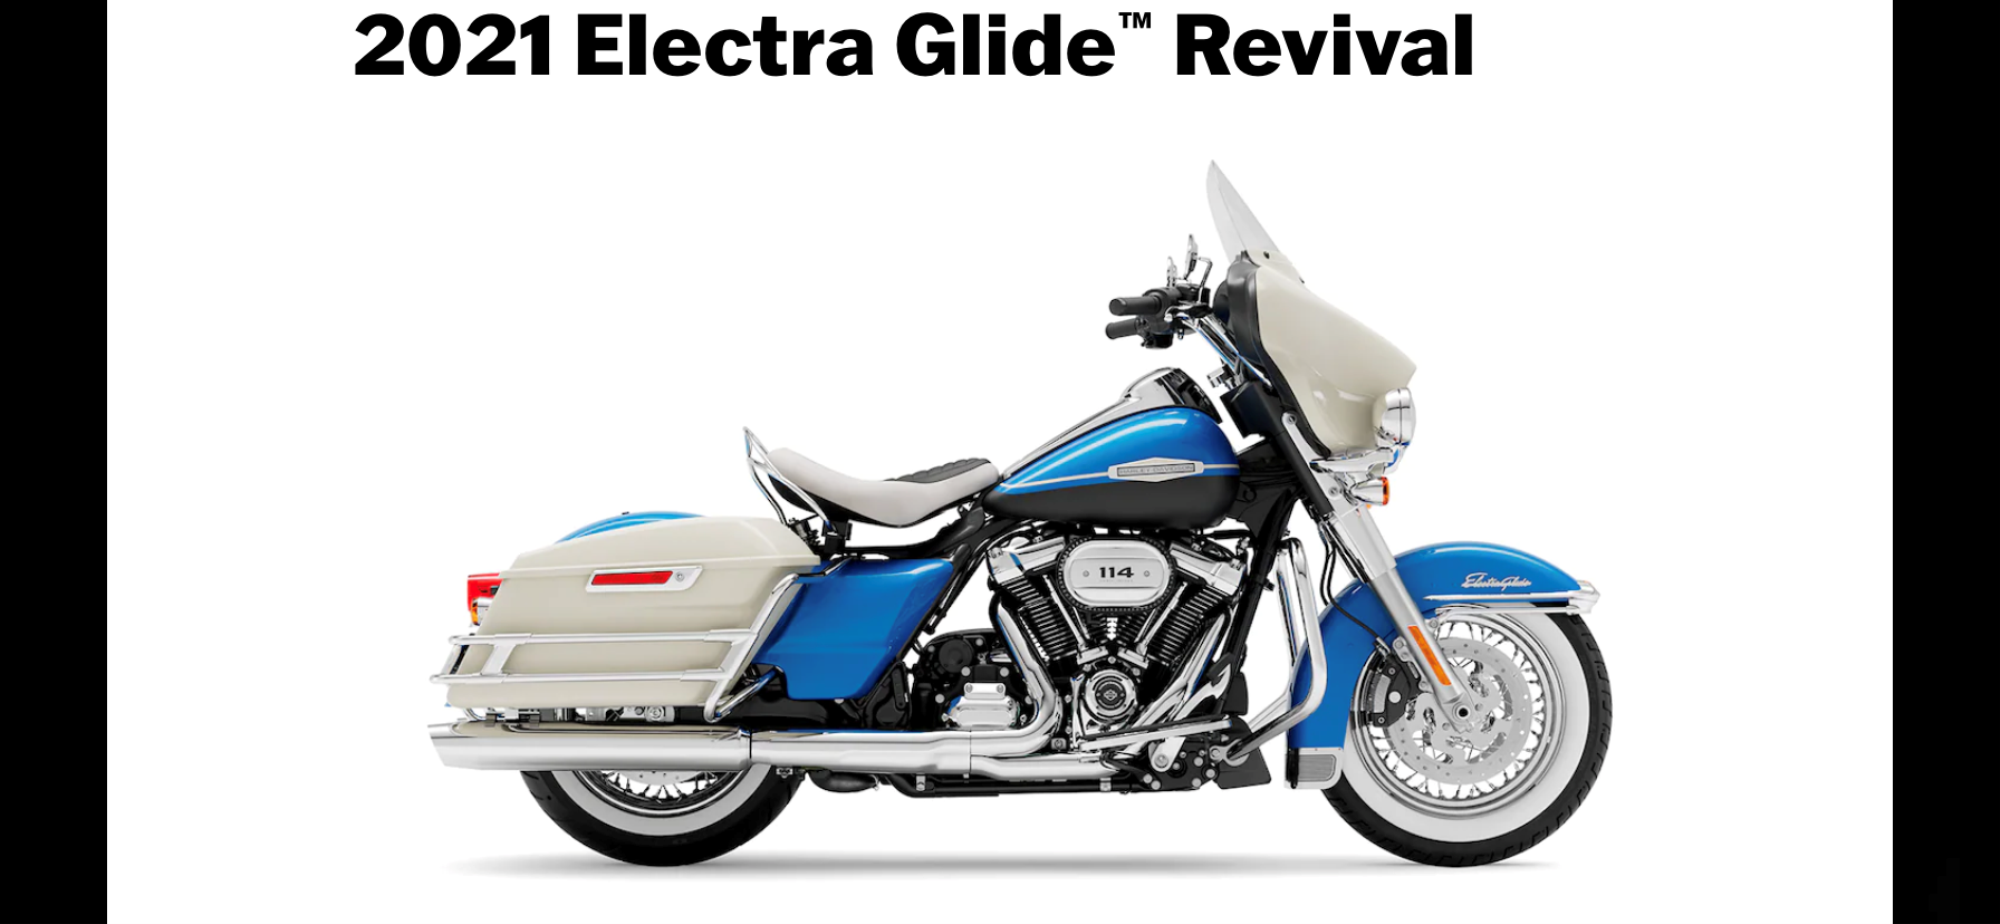 Harley Davidson Electra Glide Revival